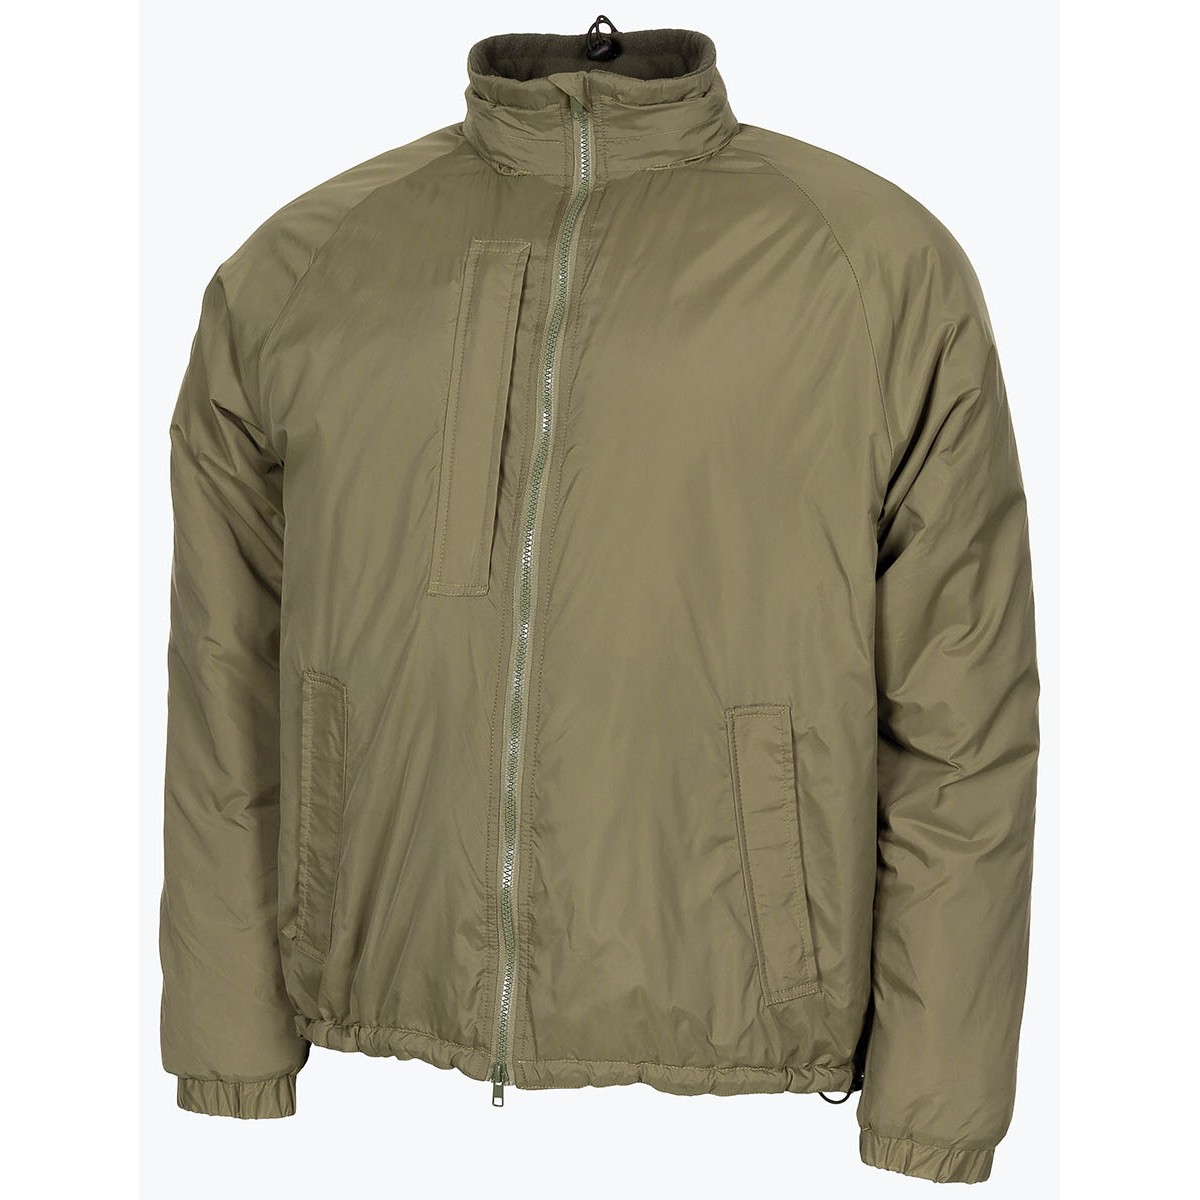 Bunda zateplovací zelená GB Softie Thermal Jacket OD Green MFH® Adventure Velikost: XL